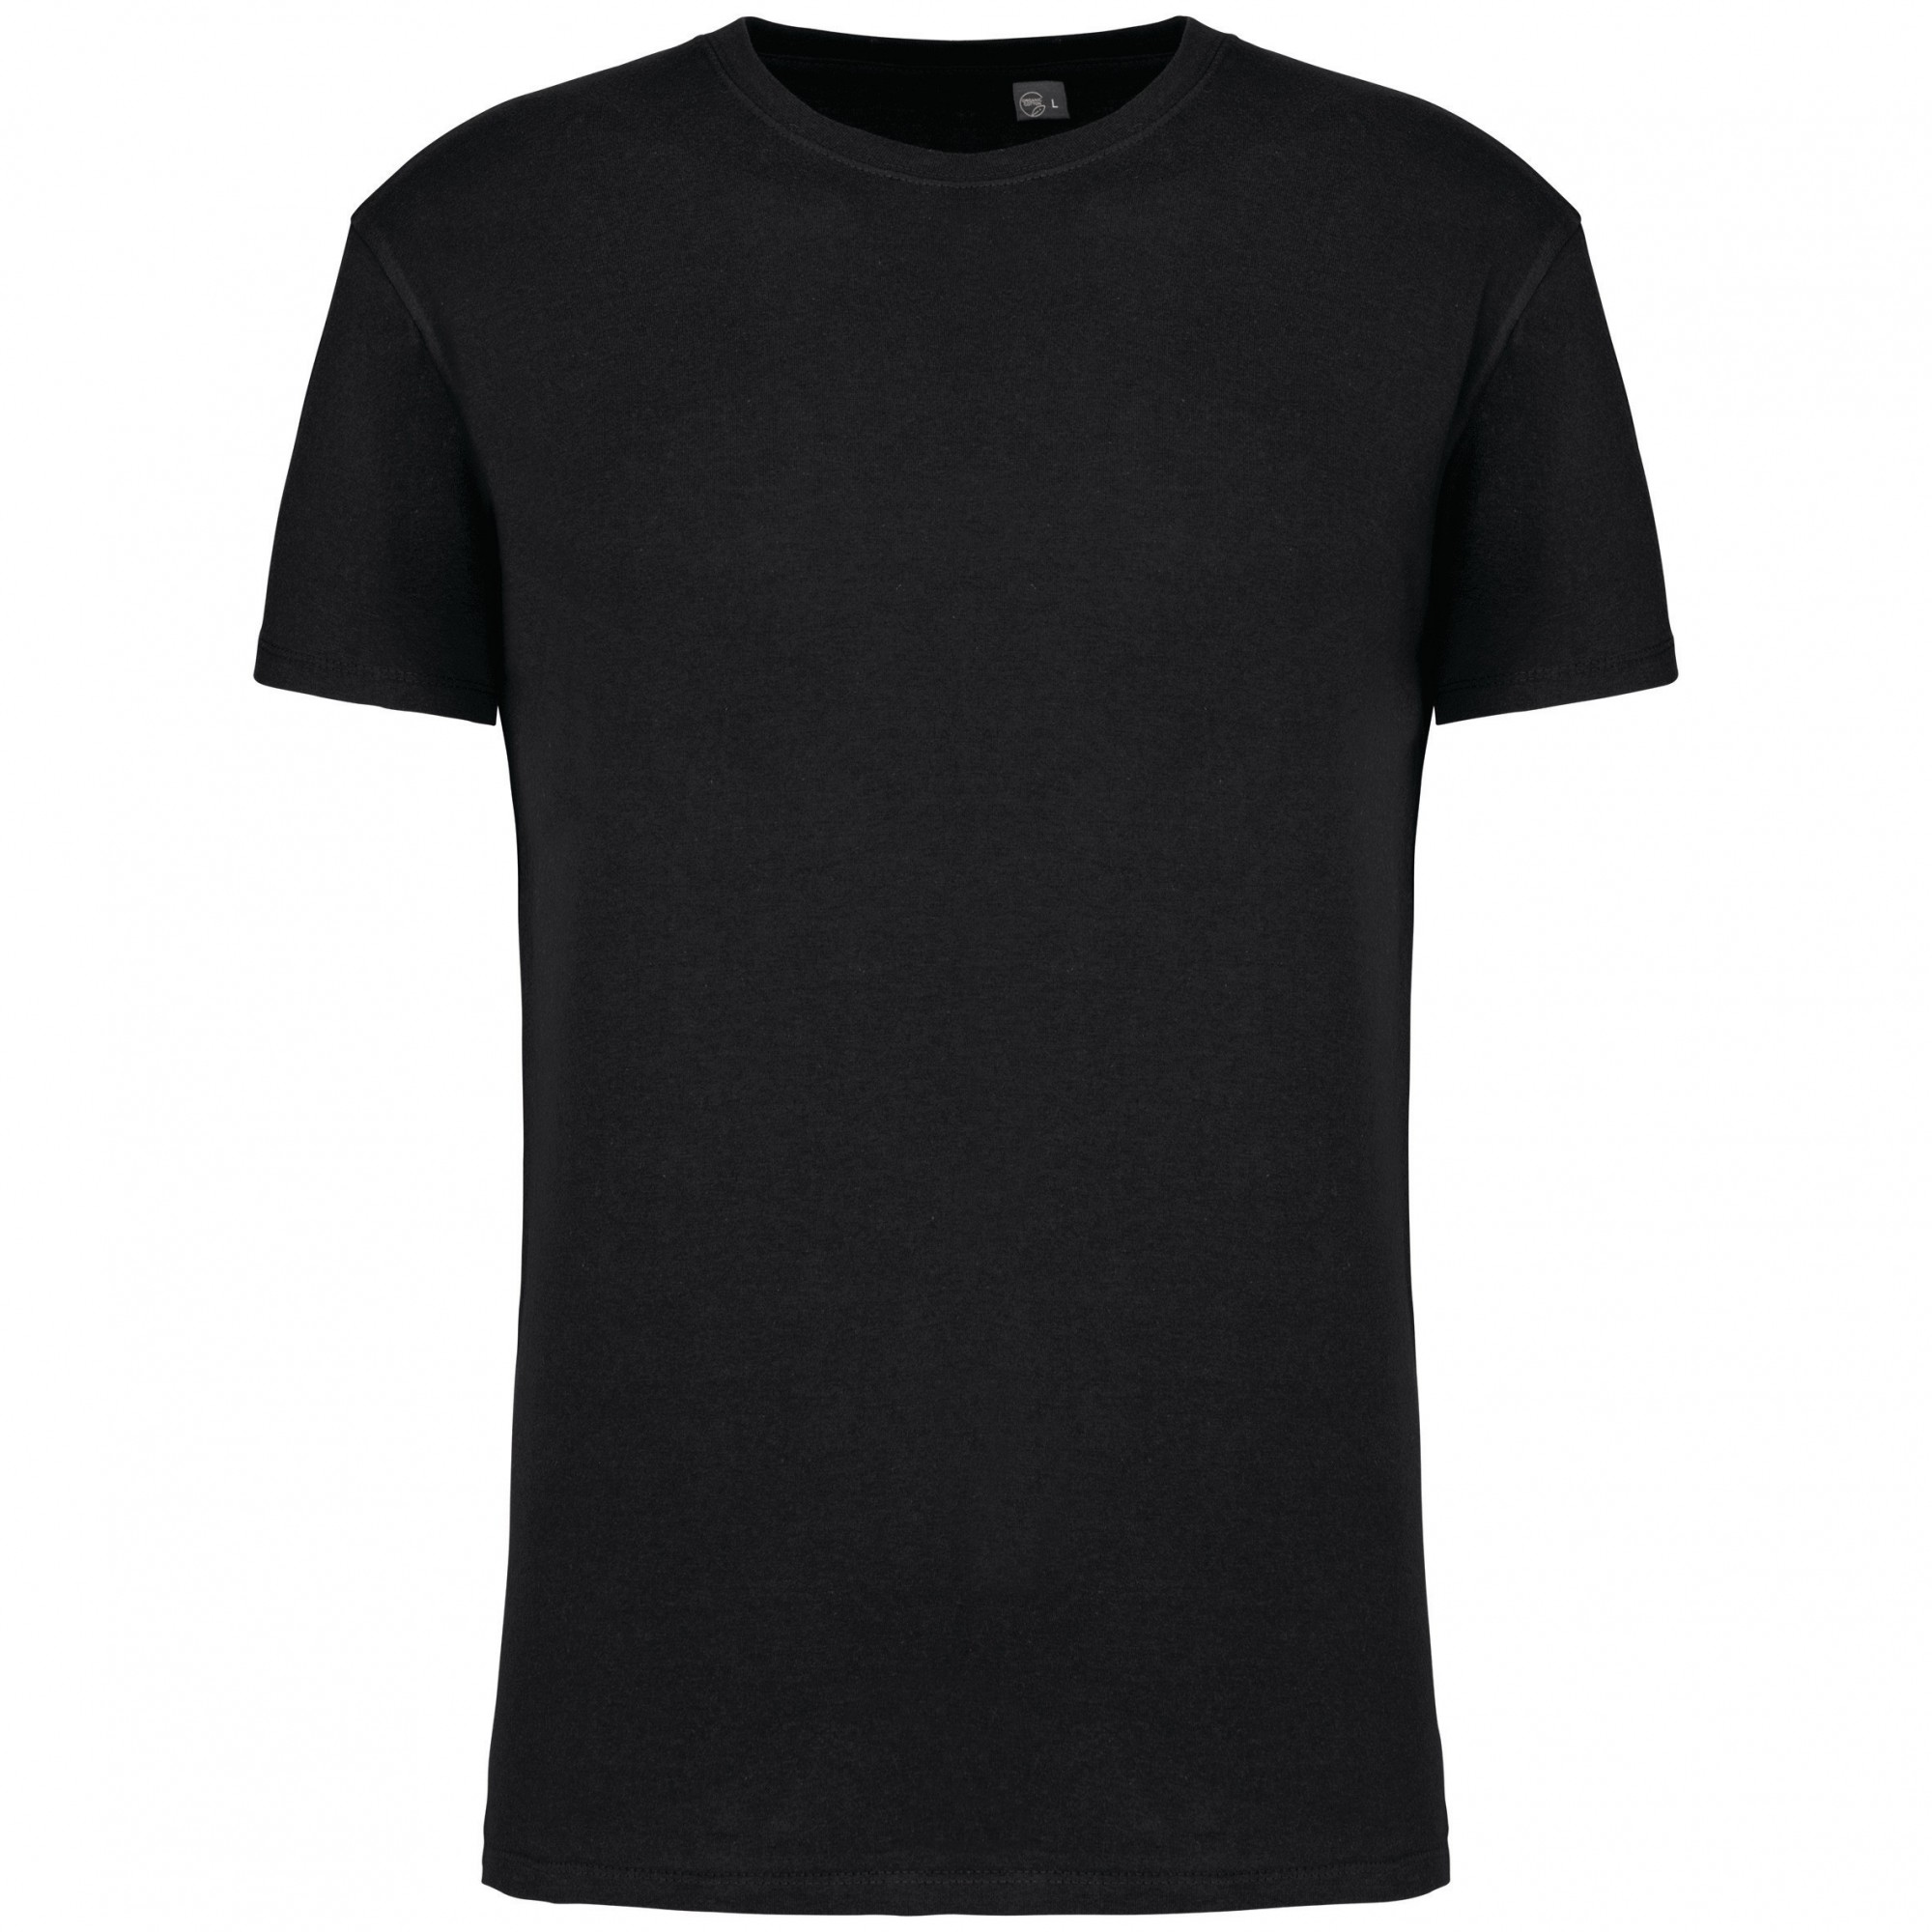 T-shirt manches courtes homme coton biologique - Kariban